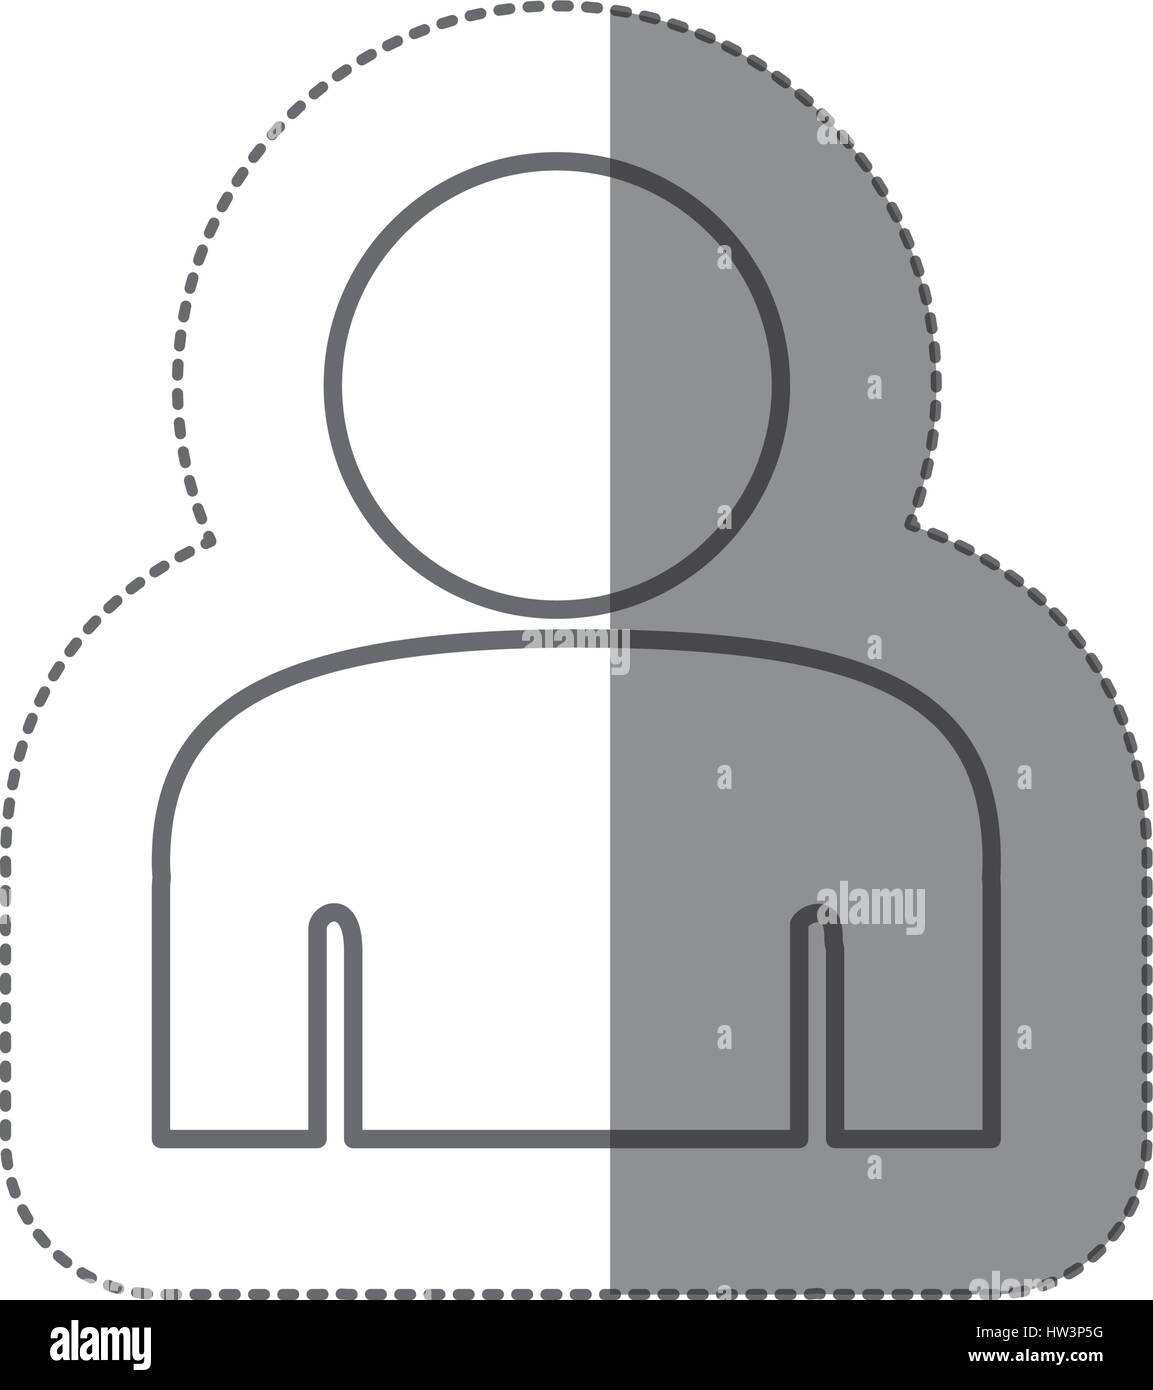 sticker silhouette half body figure person icon Stock Vector